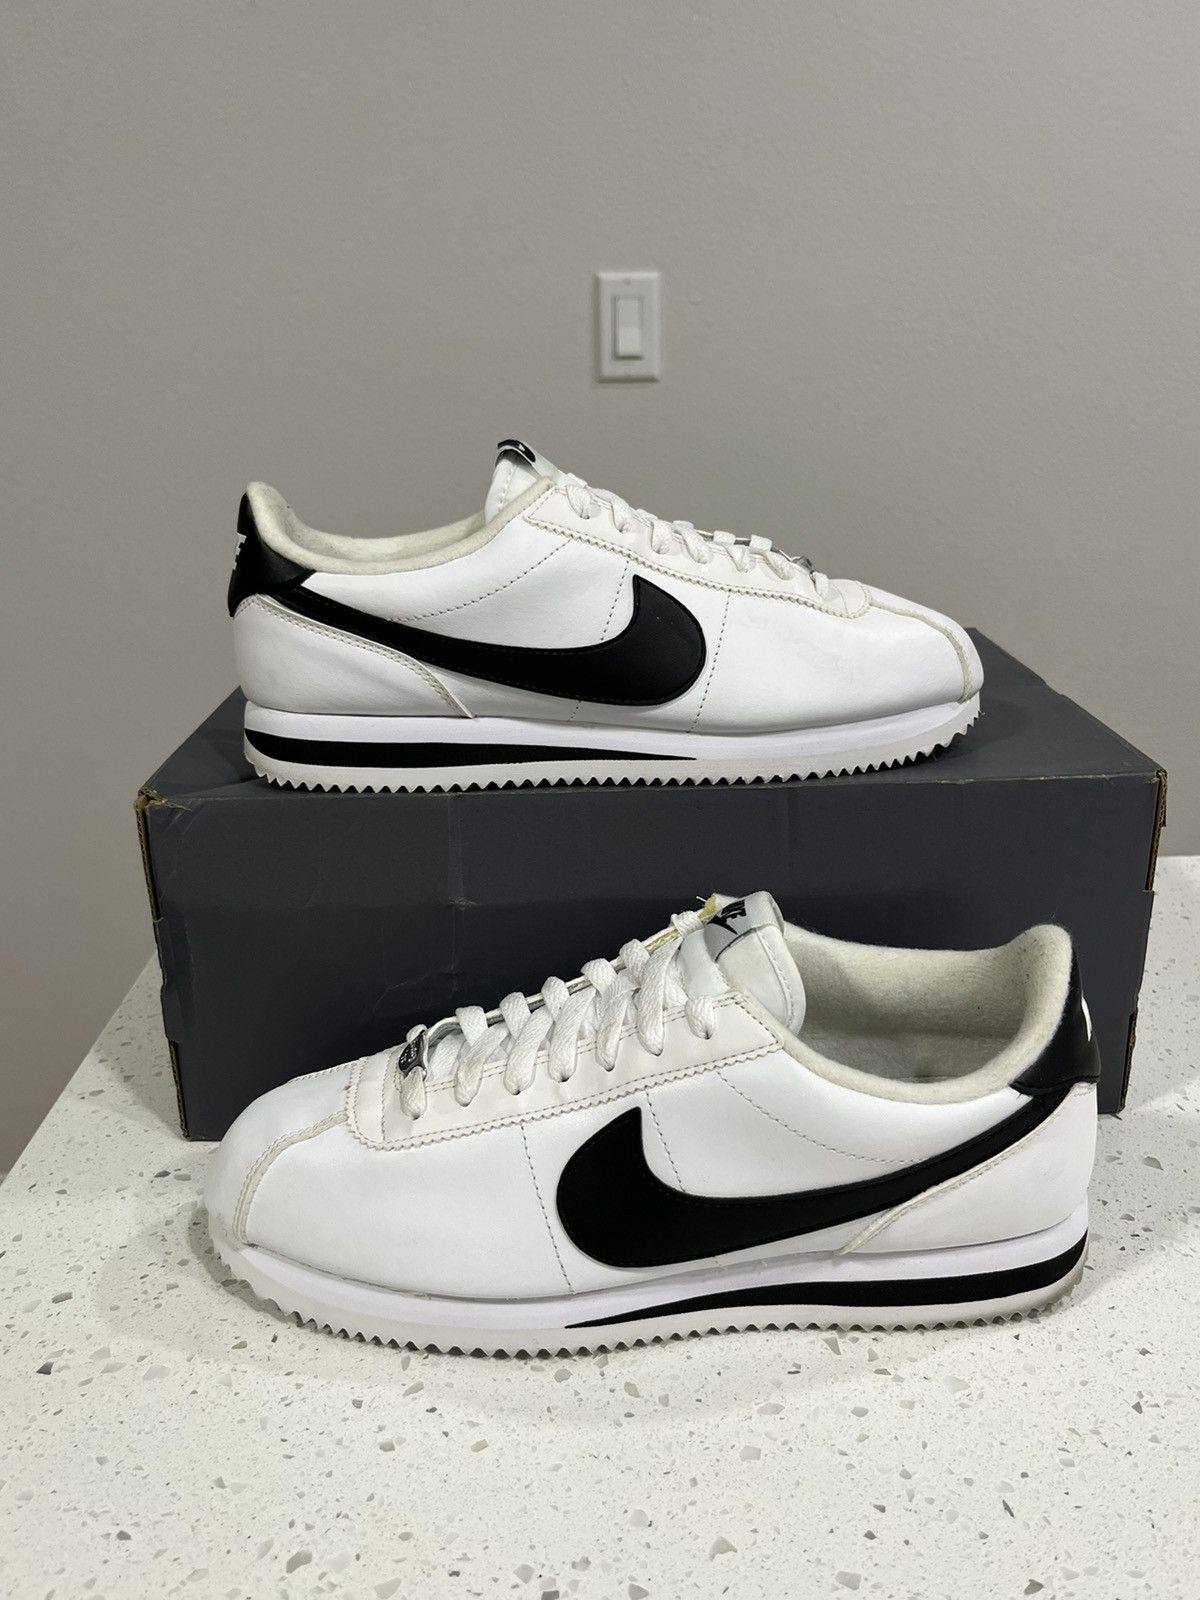 Nike Cortez Basic Leather White Black Classic Panda 819719-100 Mens Size 13